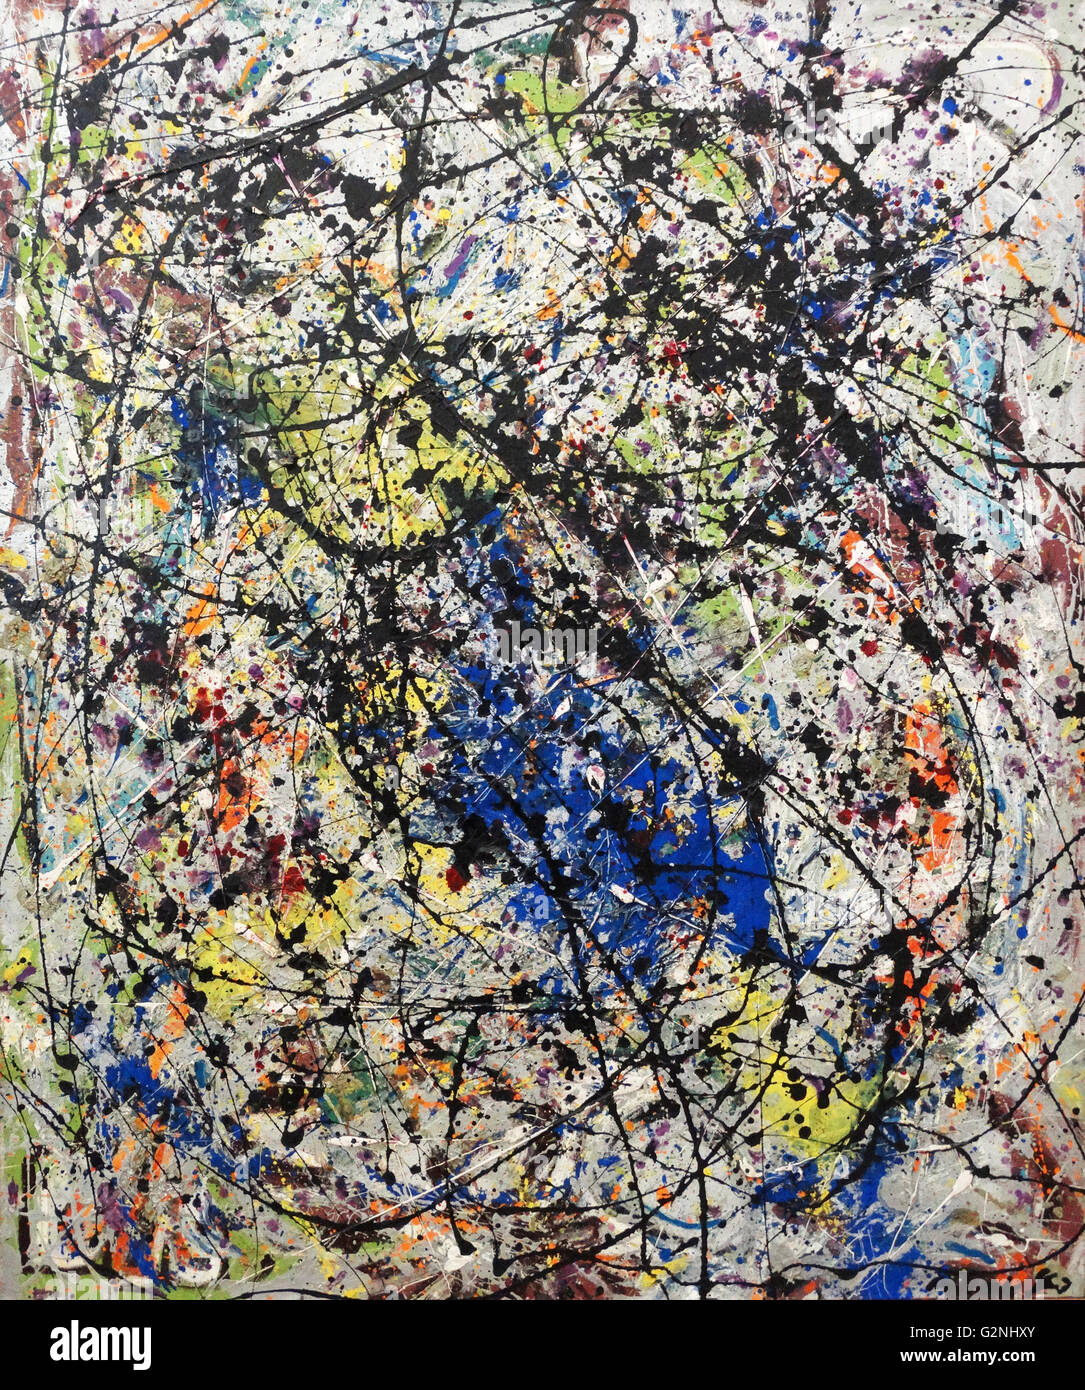 La riflessione del Big Dipper (vernice su tela) da Jackson Pollock (1912-1956) fu un influente pittore americano con una figura importante nella espressionista astratto movimento. Egli era ben noto per il suo stile unico di pittura di gocciolamento. Foto Stock